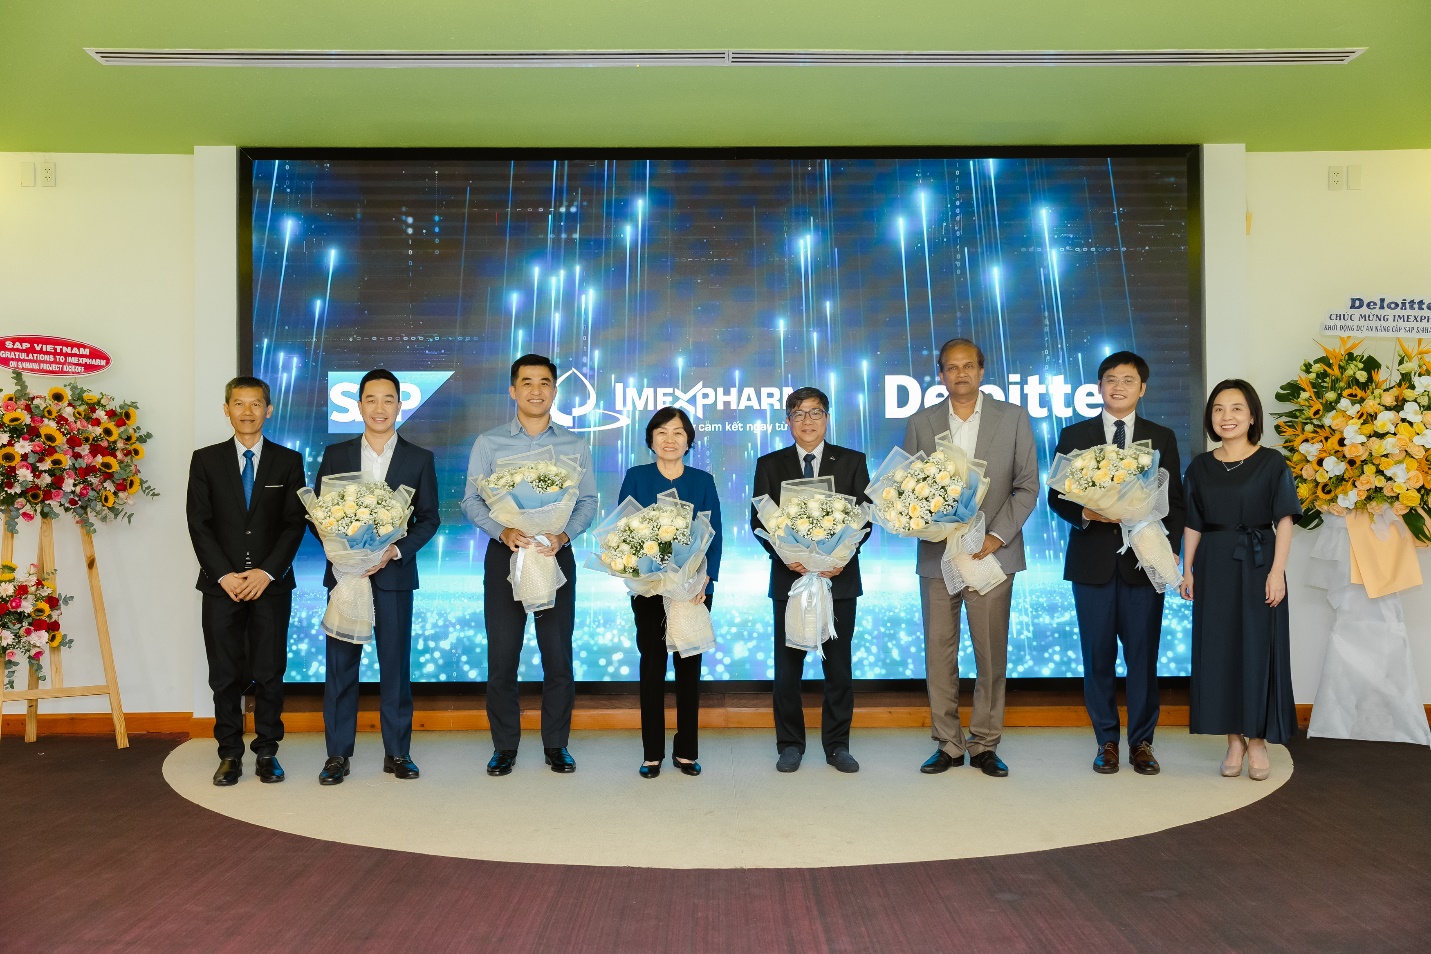 Đại diện IMP, Deloitte Việt Nam và SAP Việt Nam tại lễ khởi động dự án - Ảnh: Imexpharm